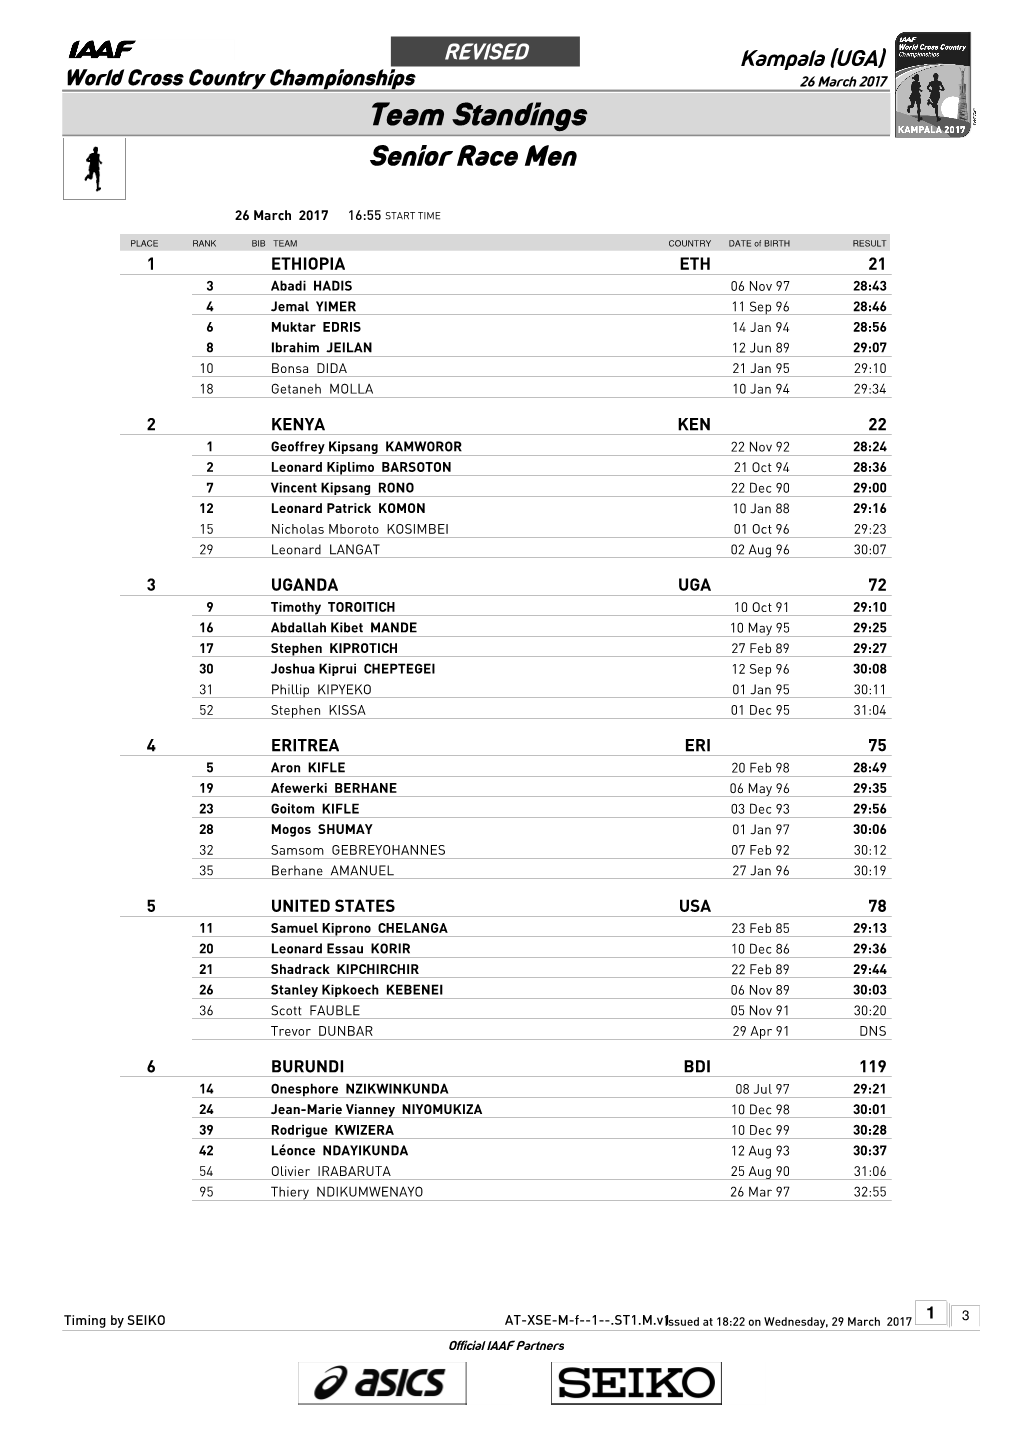 Team Standings Senior Race Men